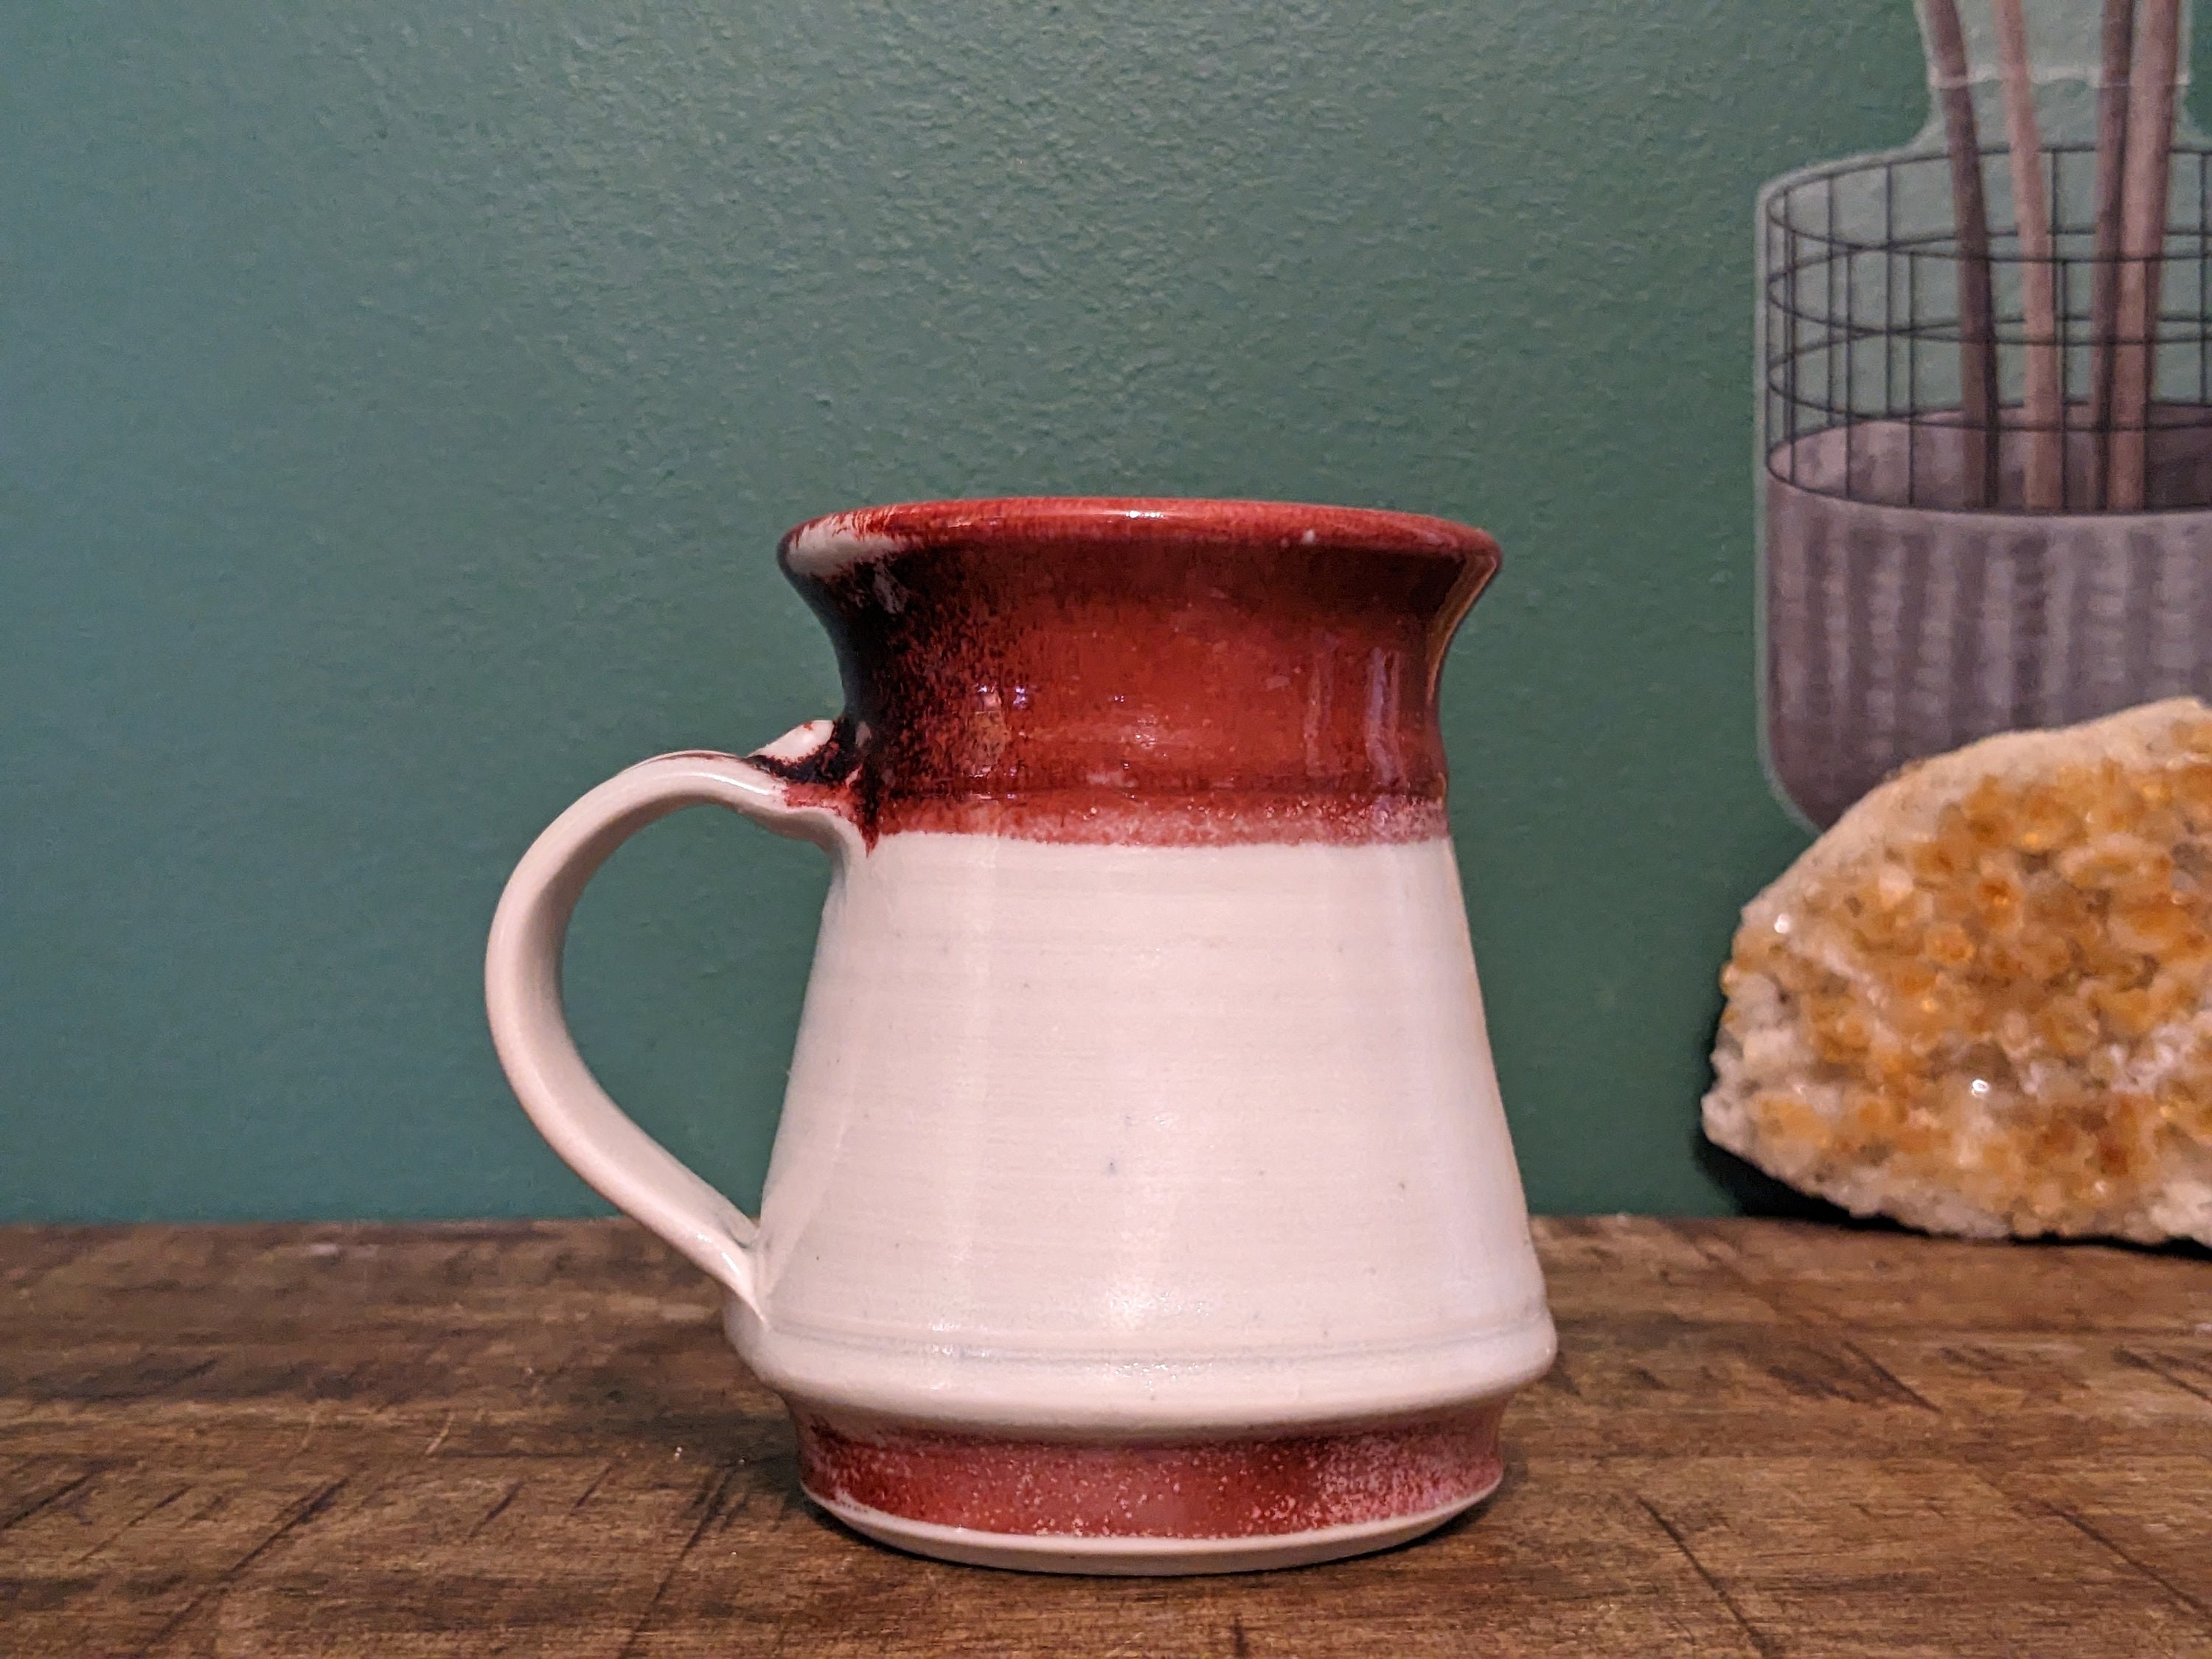 Vintage Georgia Ceramic No-spill Mug, Cream Crackle Glaze 